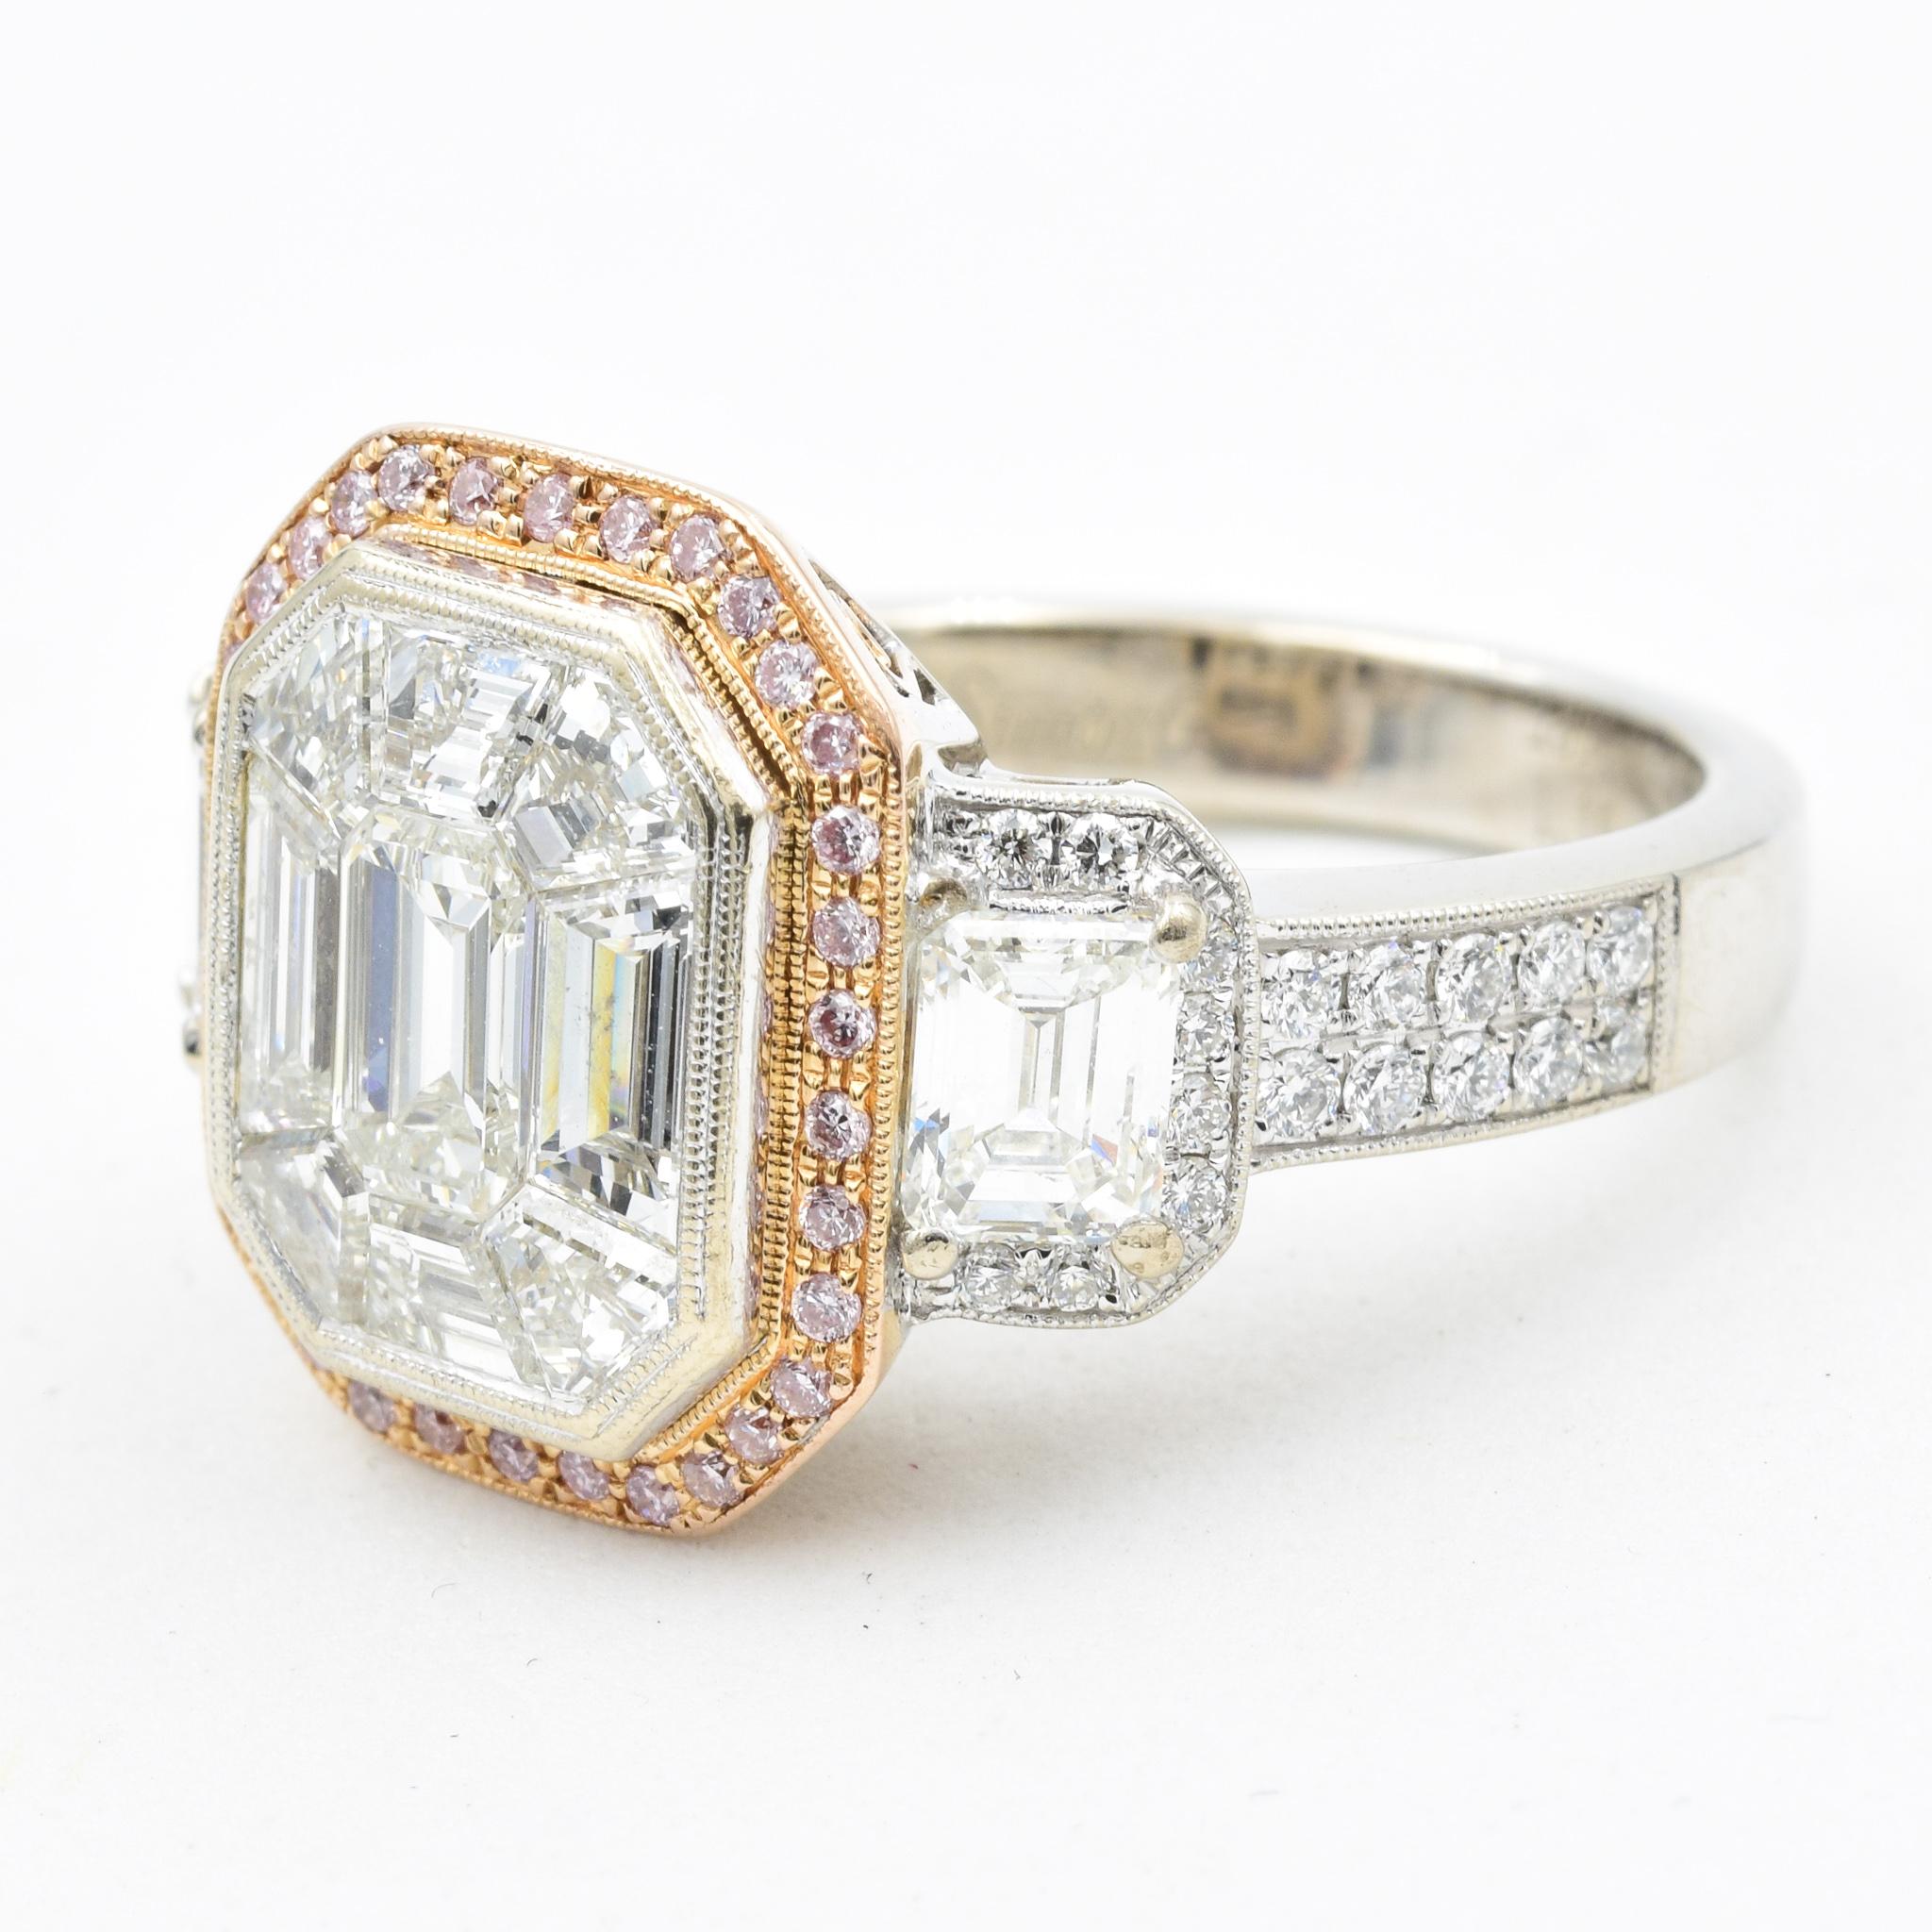 simon g rose gold engagement rings